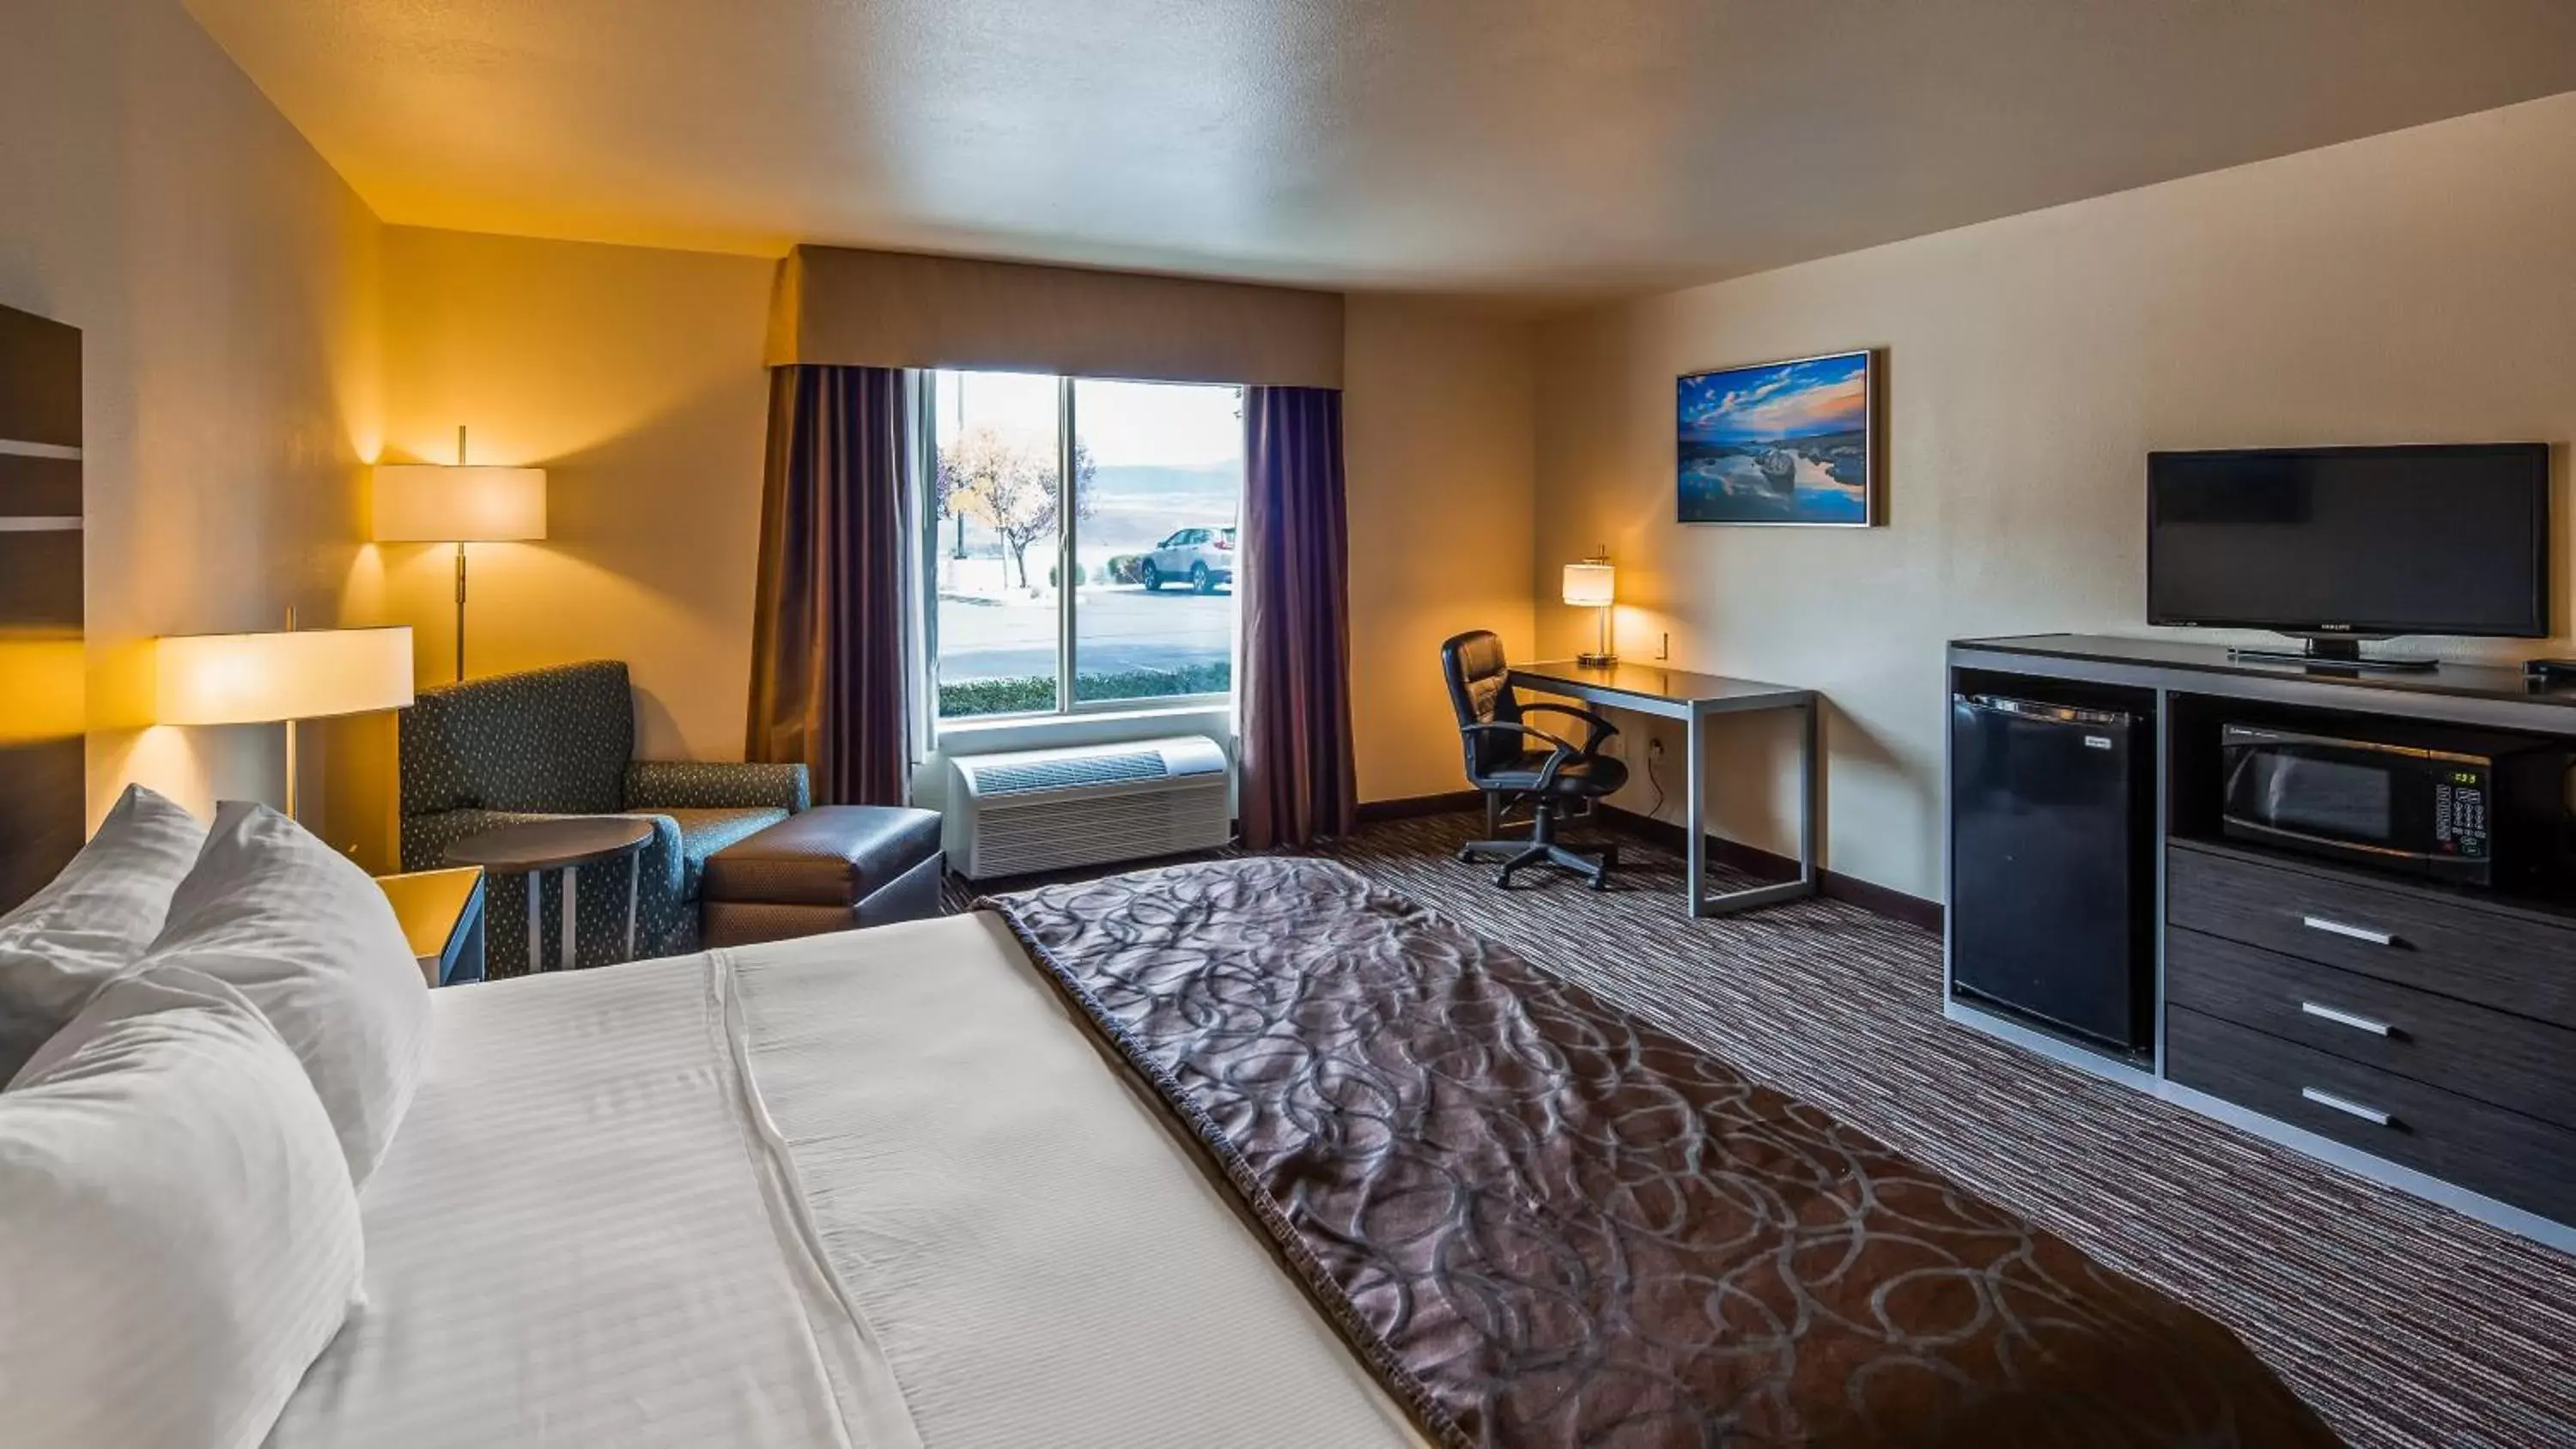 Bedroom, TV/Entertainment Center in Best Western Topaz Lake Inn